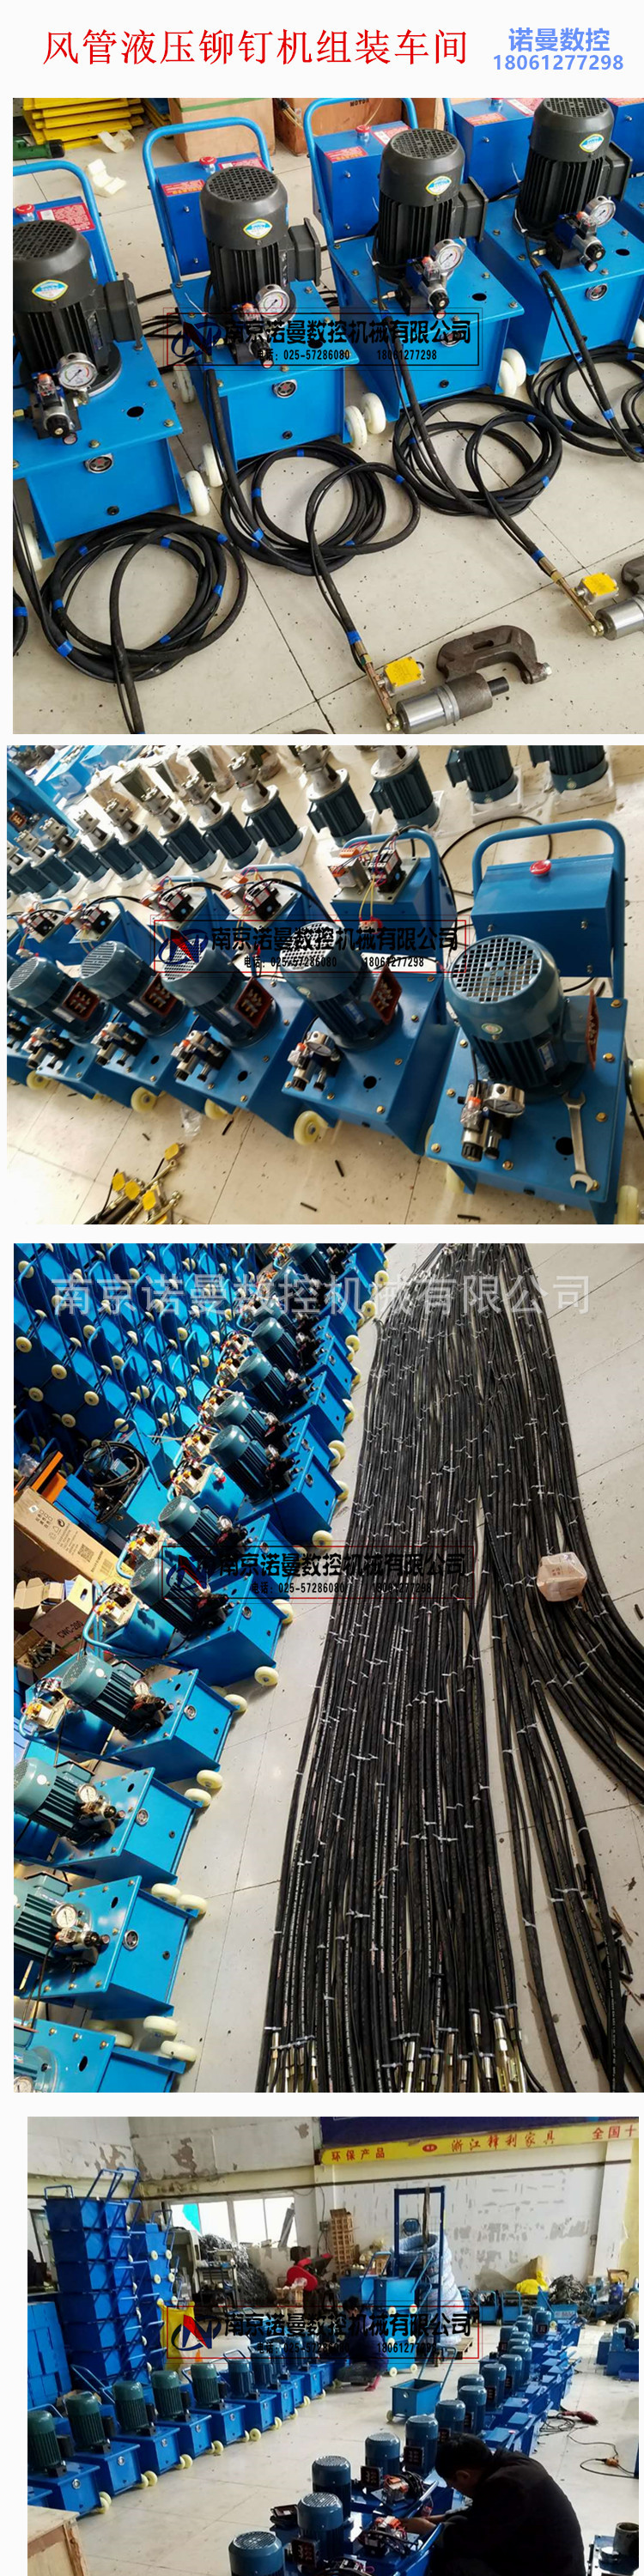 江苏通风设备明星企业 南京诺曼风管铆钉机厂家直供 品质保证示例图13